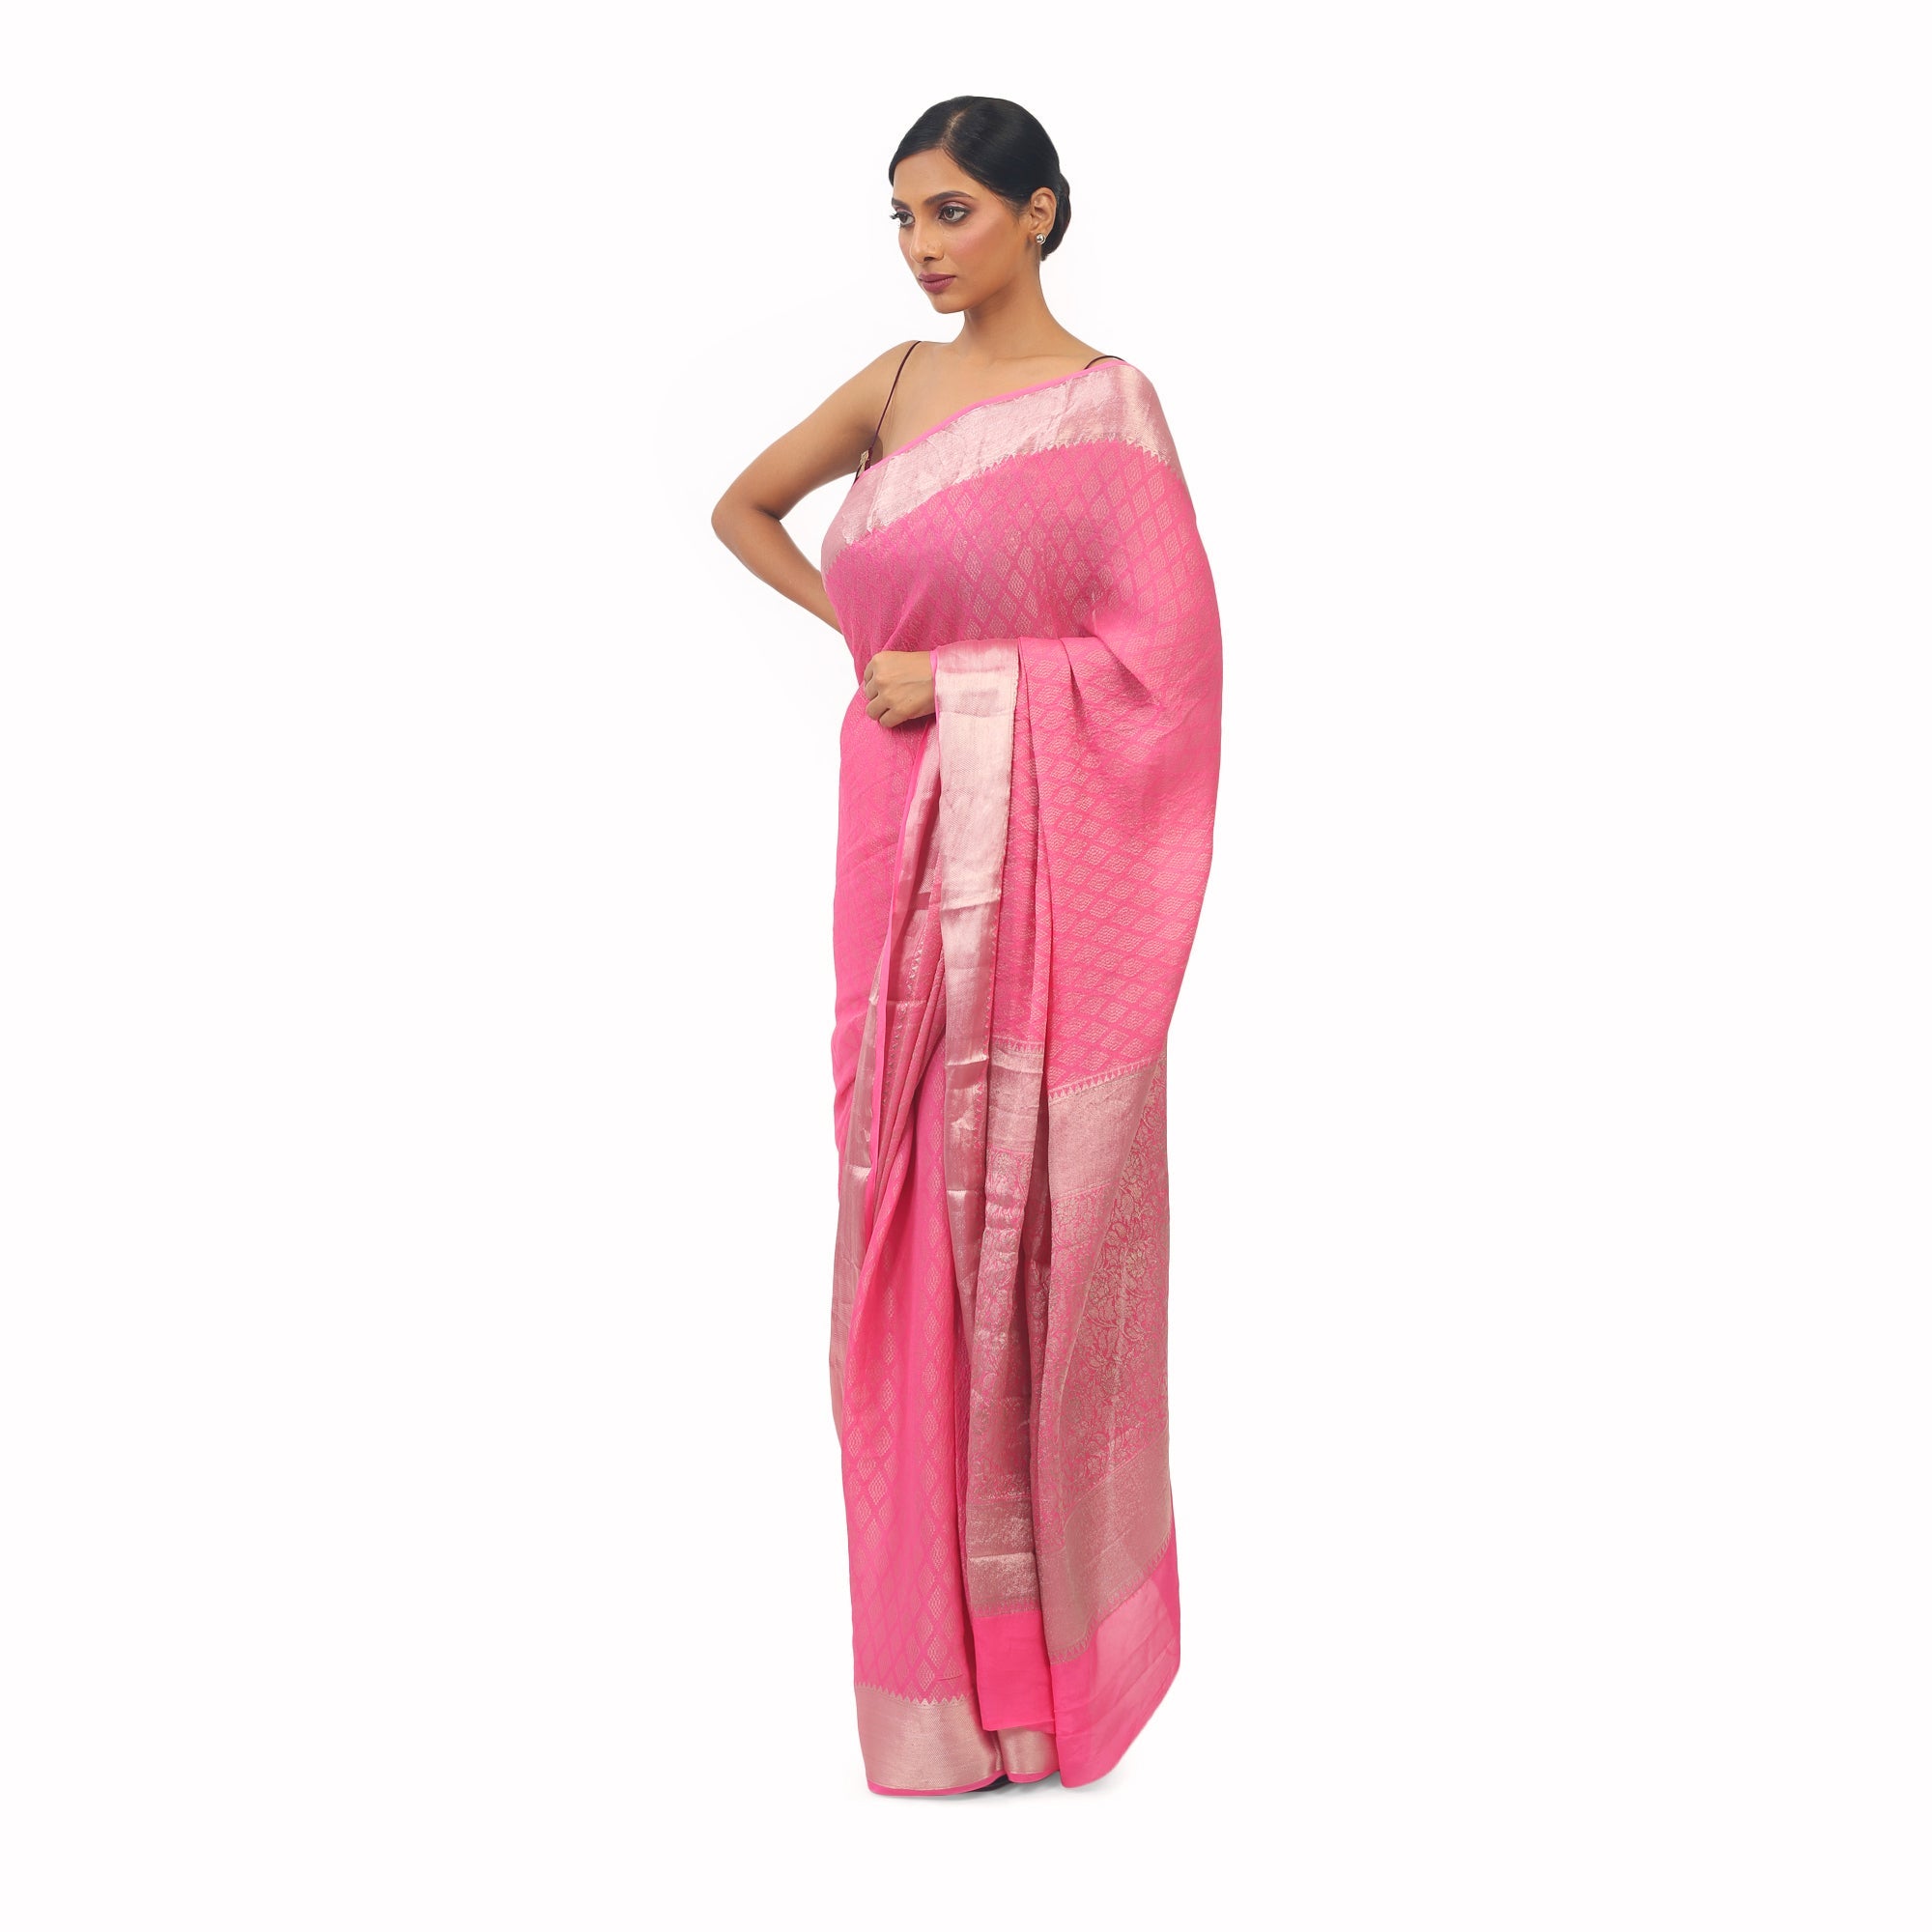 5.5 m (separate blouse piece) Muslin Kora Pink And Silver Banarasi Silk  Saree, With Blouse Piece at Rs 999 in Varanasi